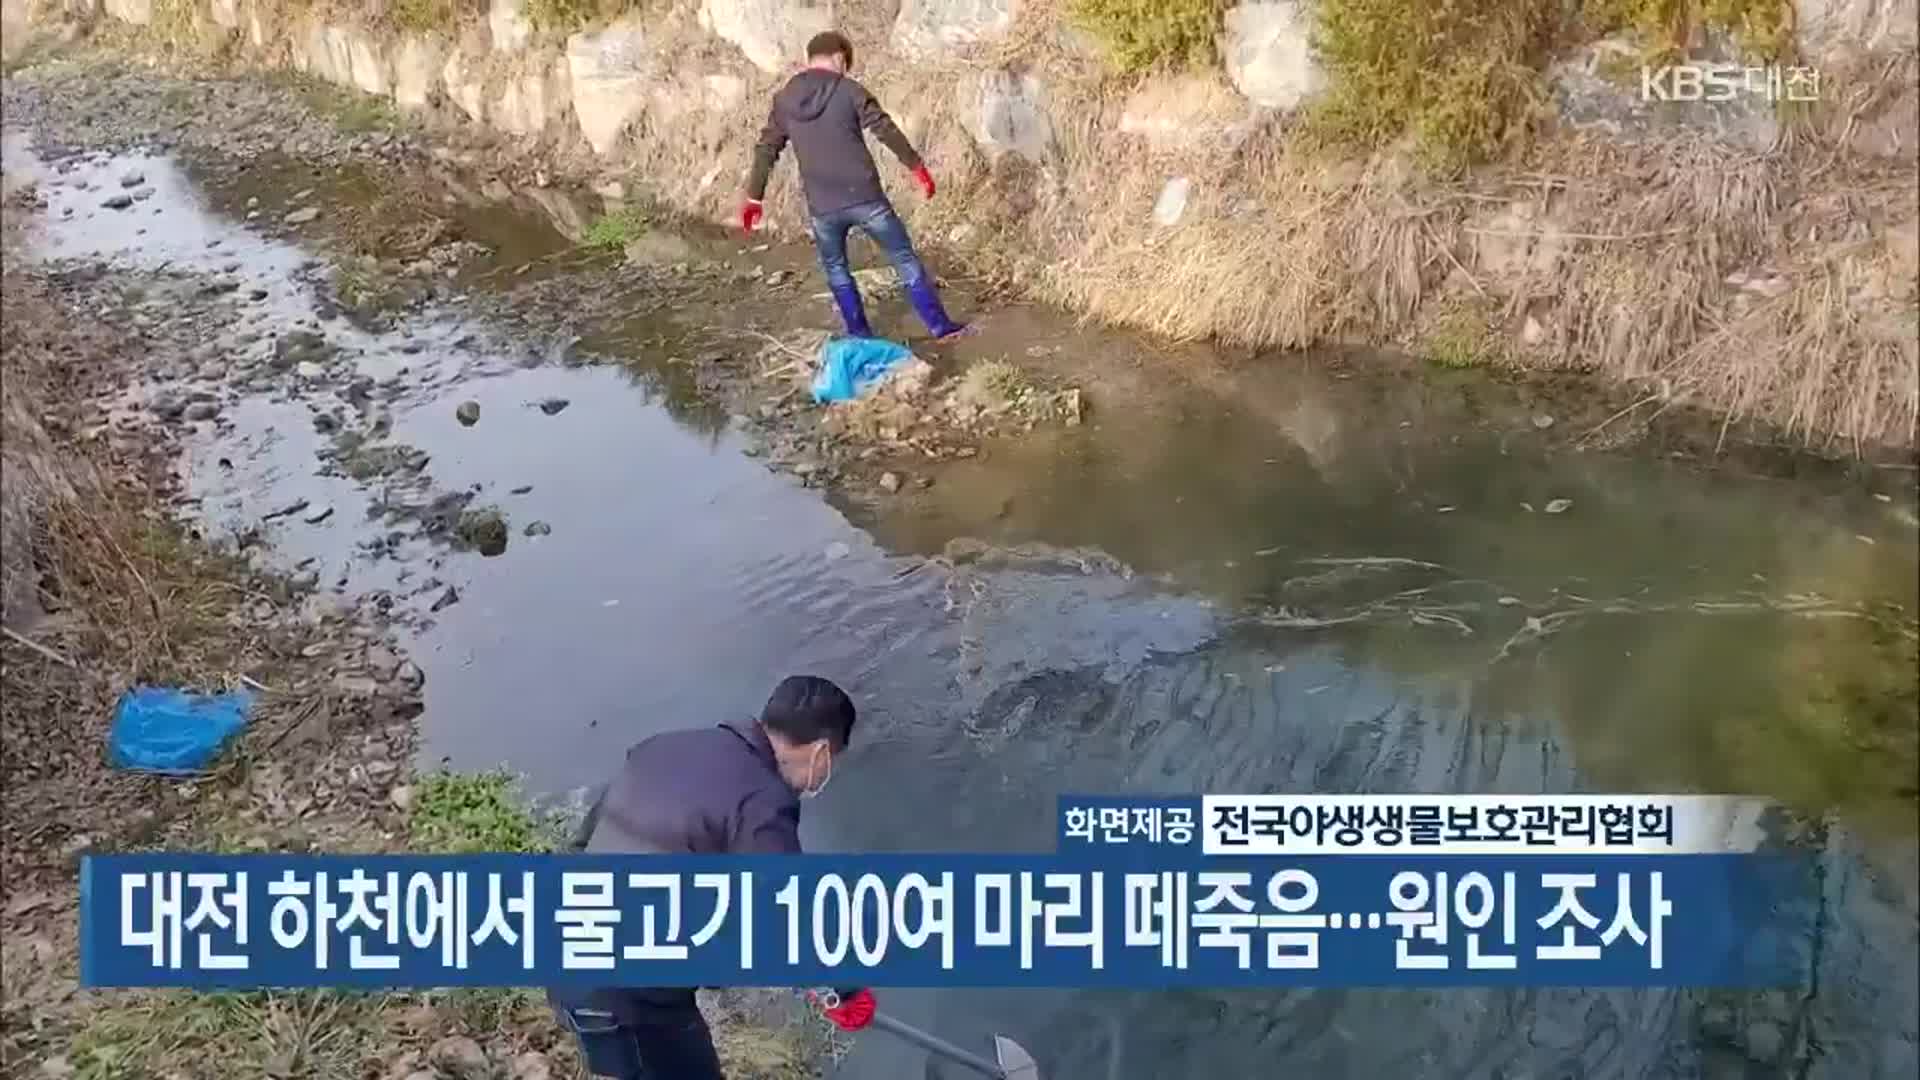 대전 하천에서 물고기 100여 마리 떼죽음…원인 조사